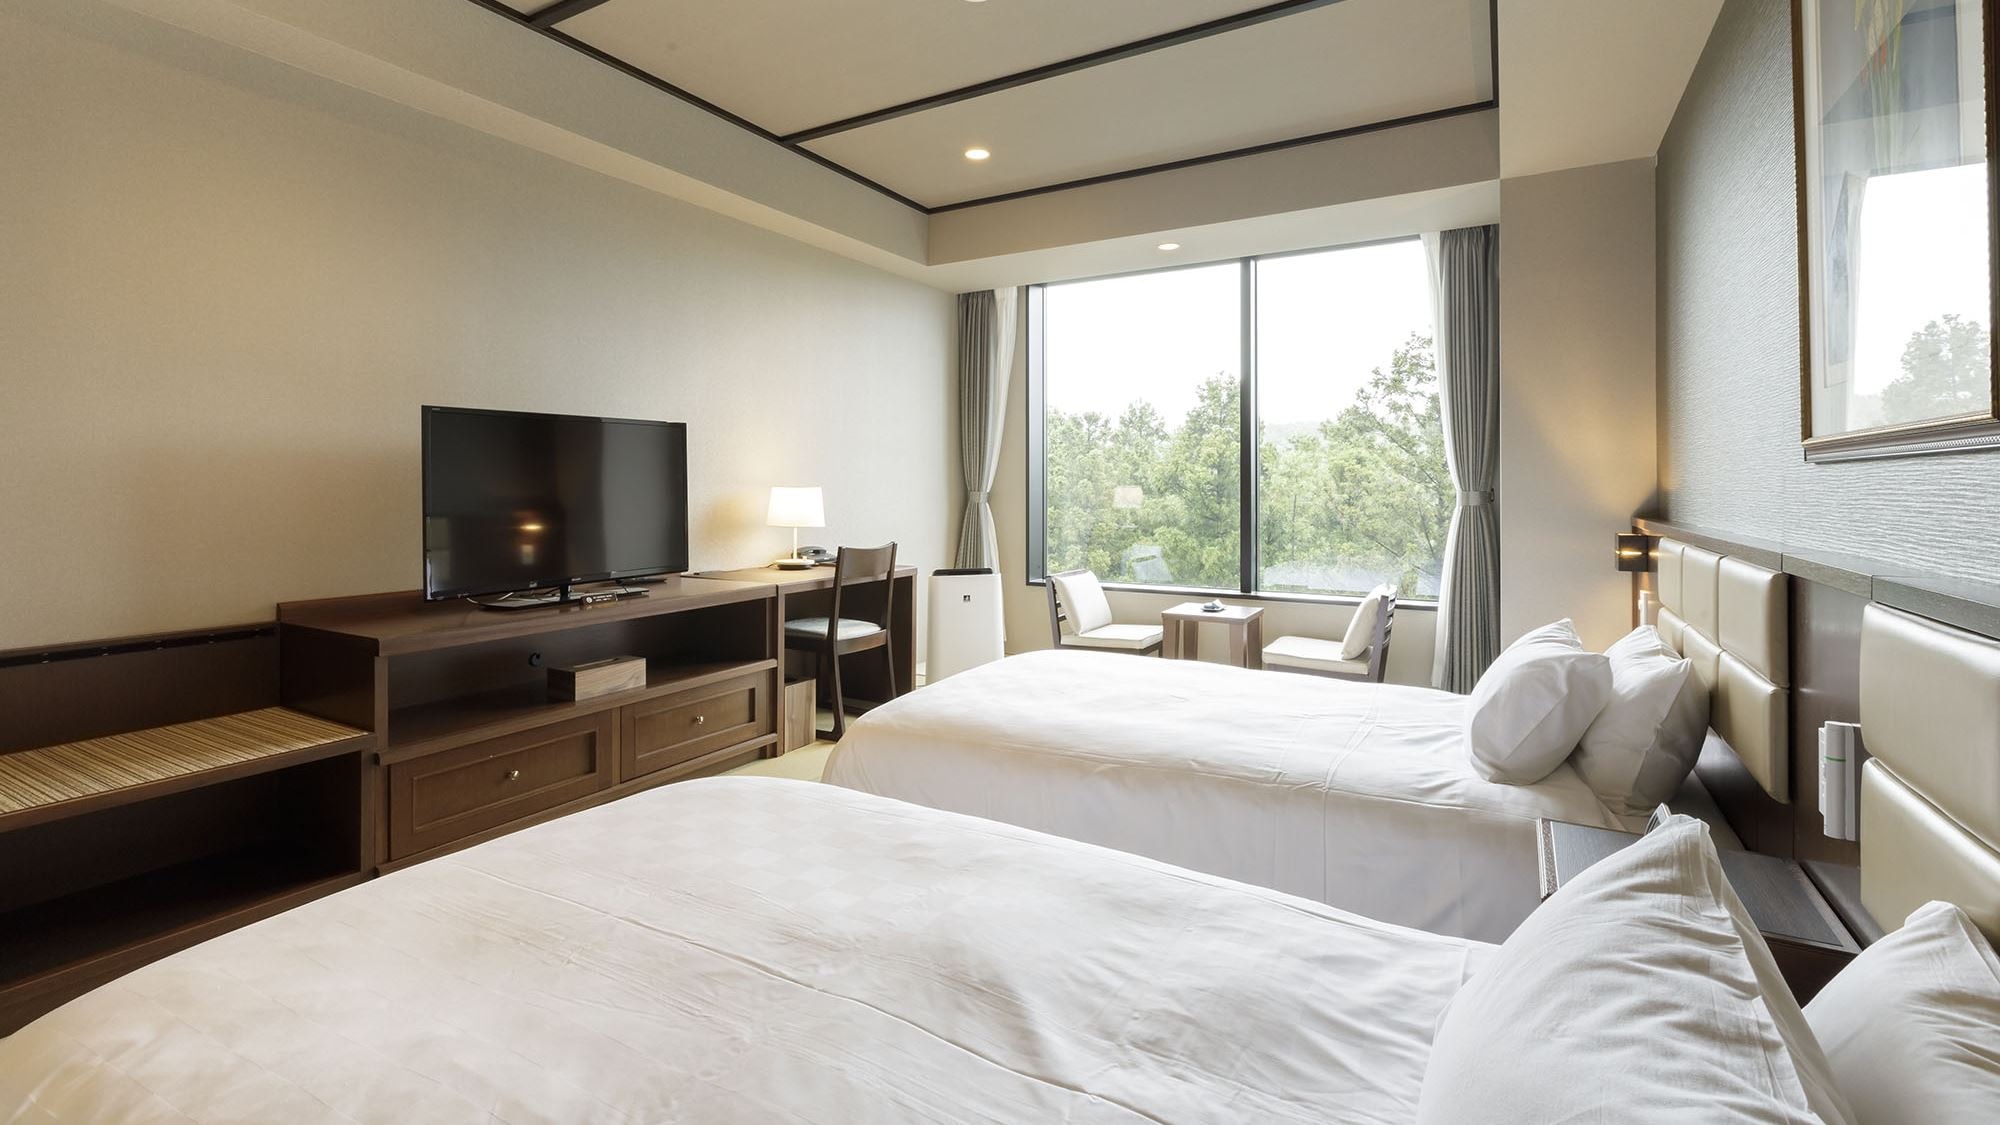 标准 [日式双床房] 西式房间的便利与日式房间的宁静相结合的舒适房间。